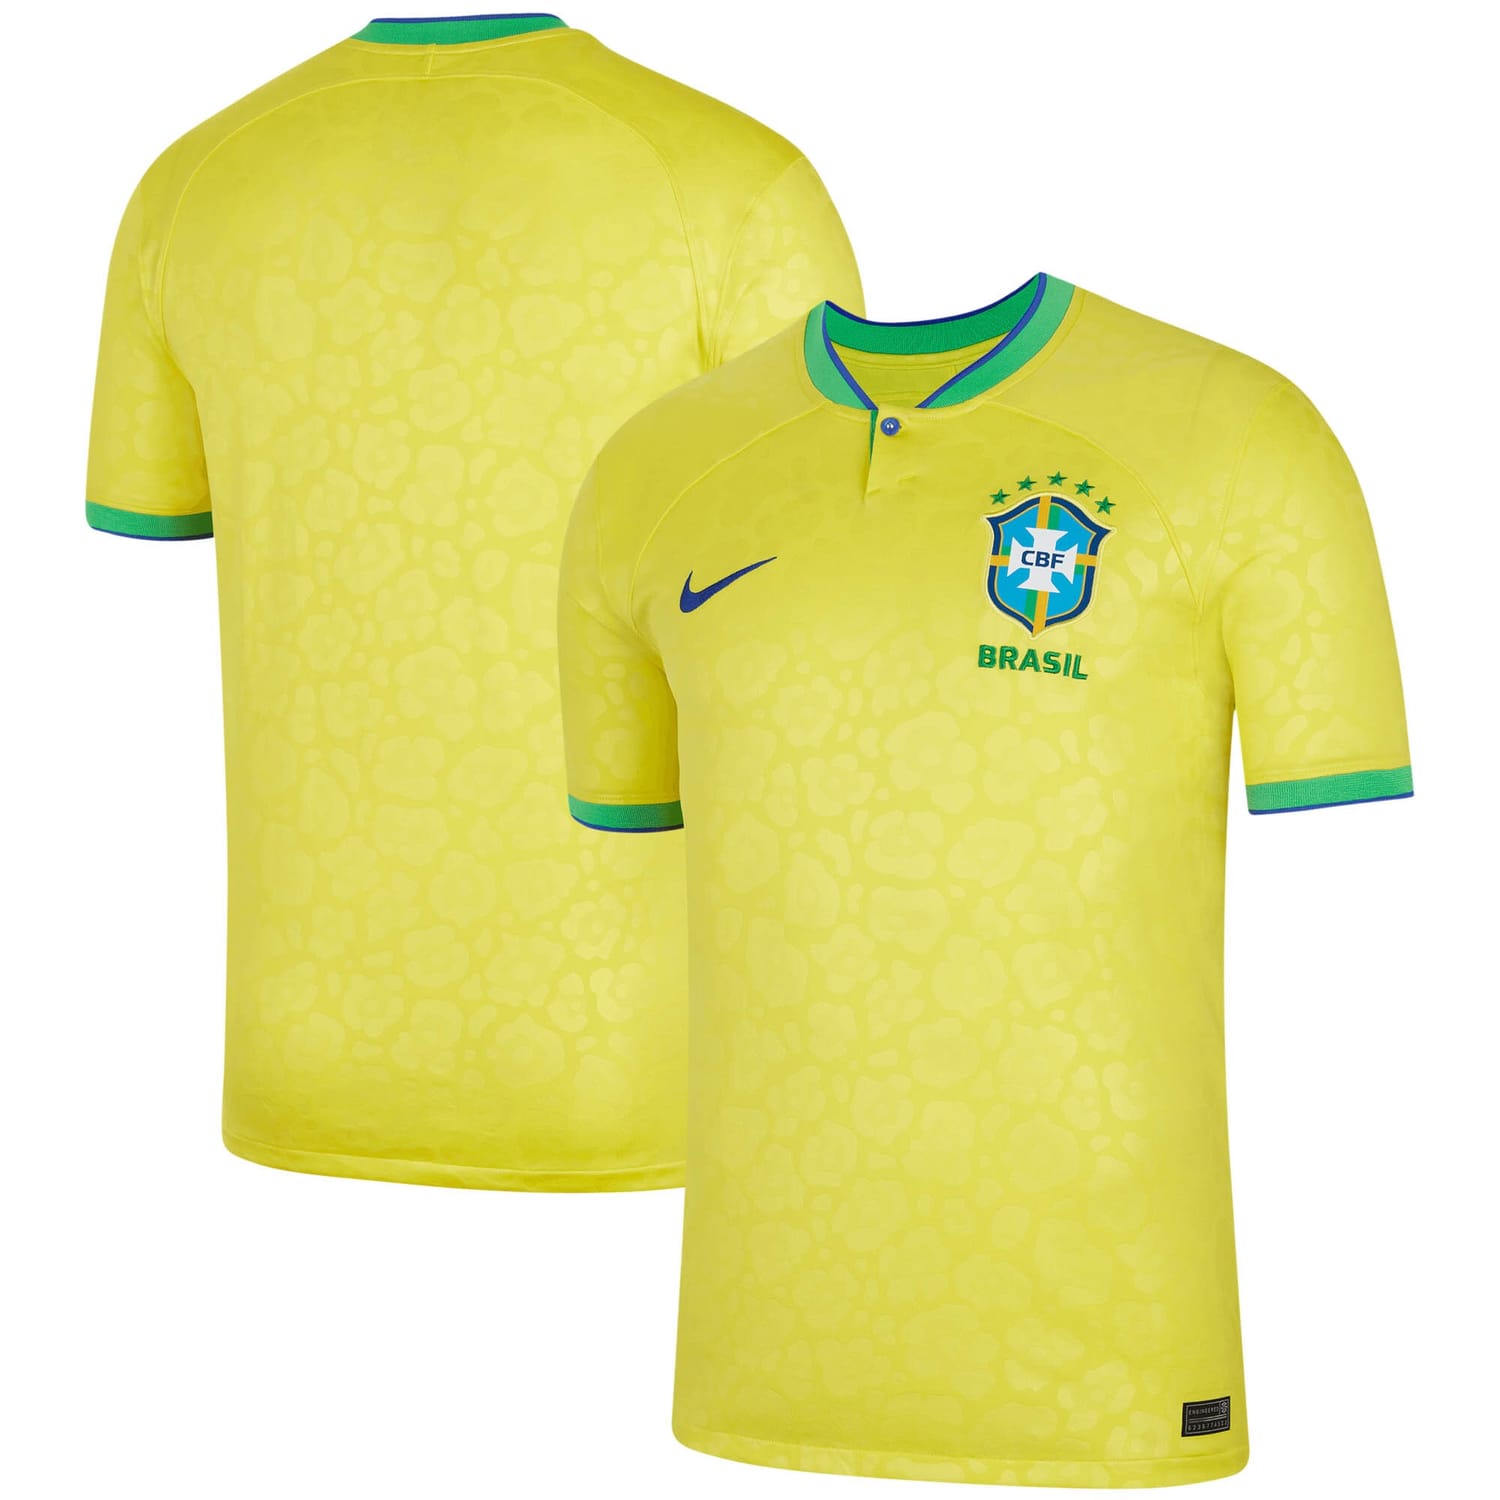 Brazil National Team Home Jersey Shirt 2022 for Men